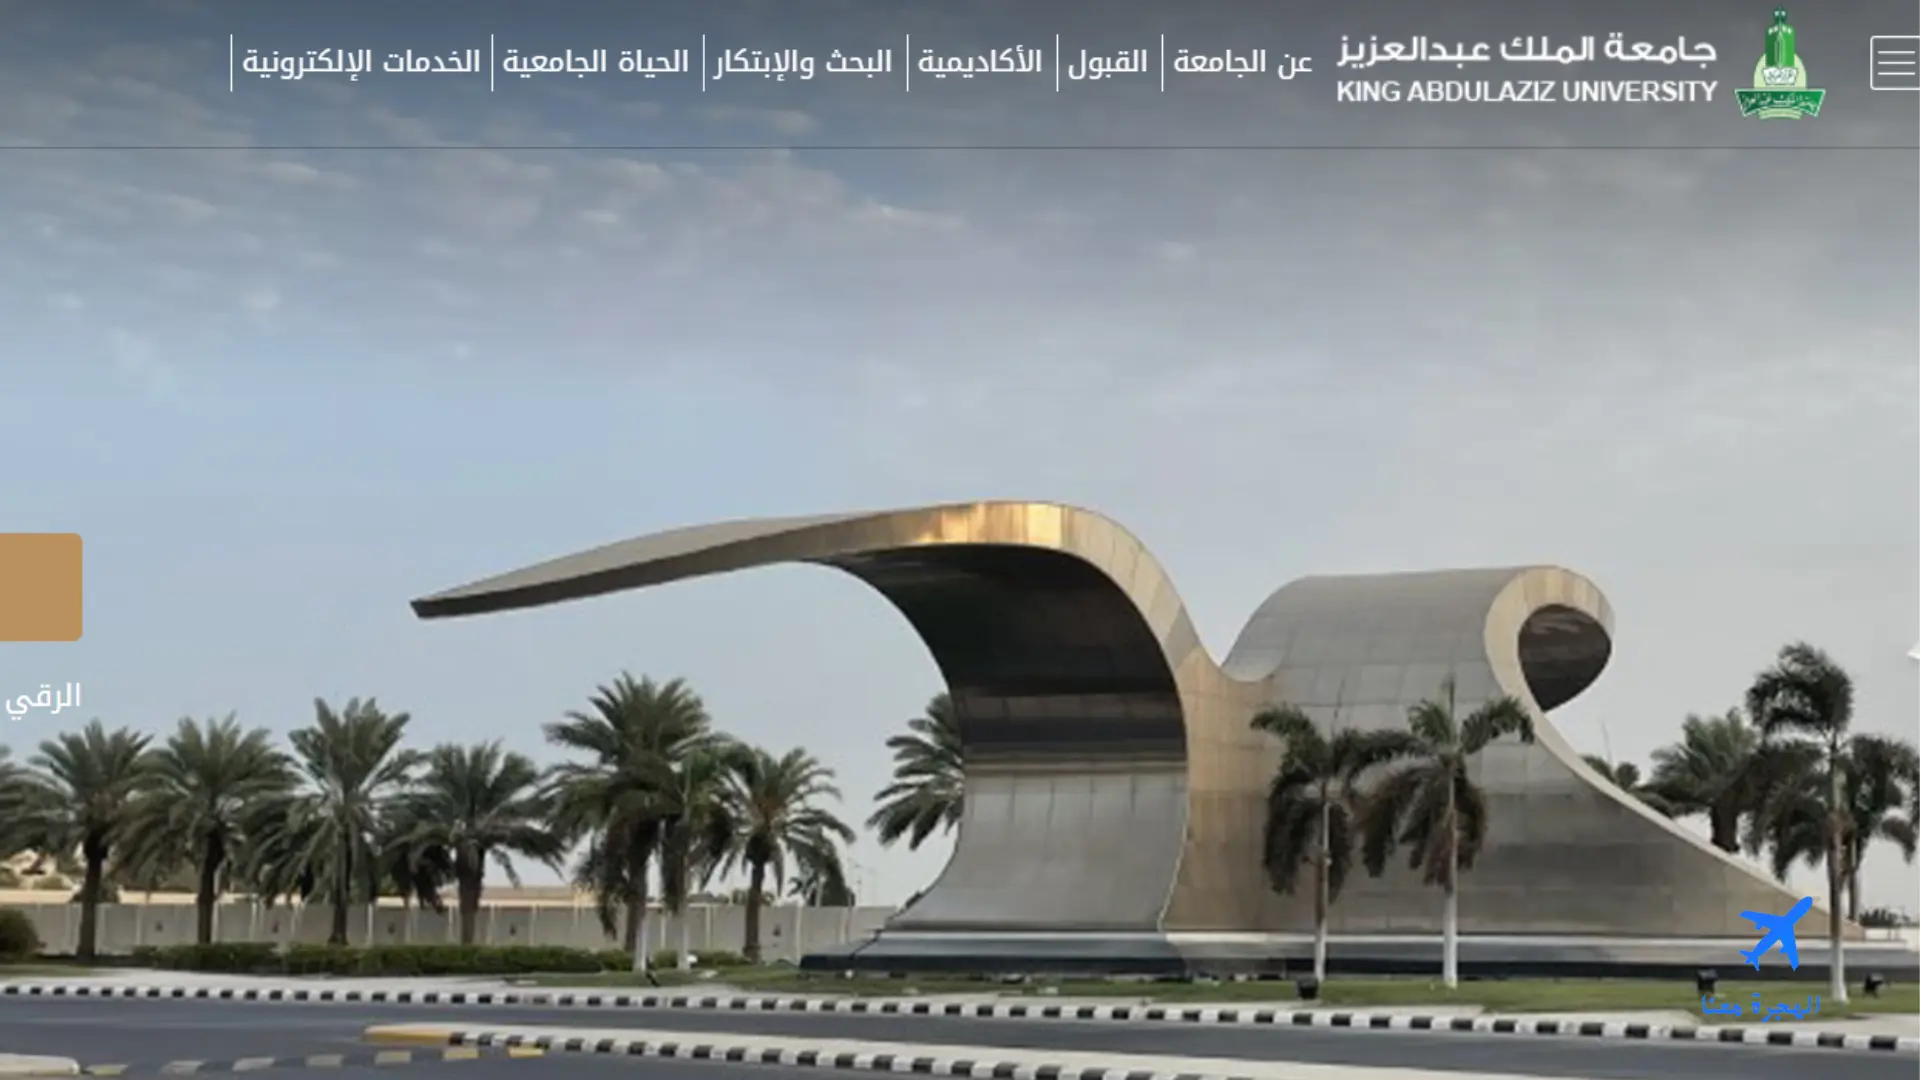 صورة من جامعة الملك عبدالعزيز